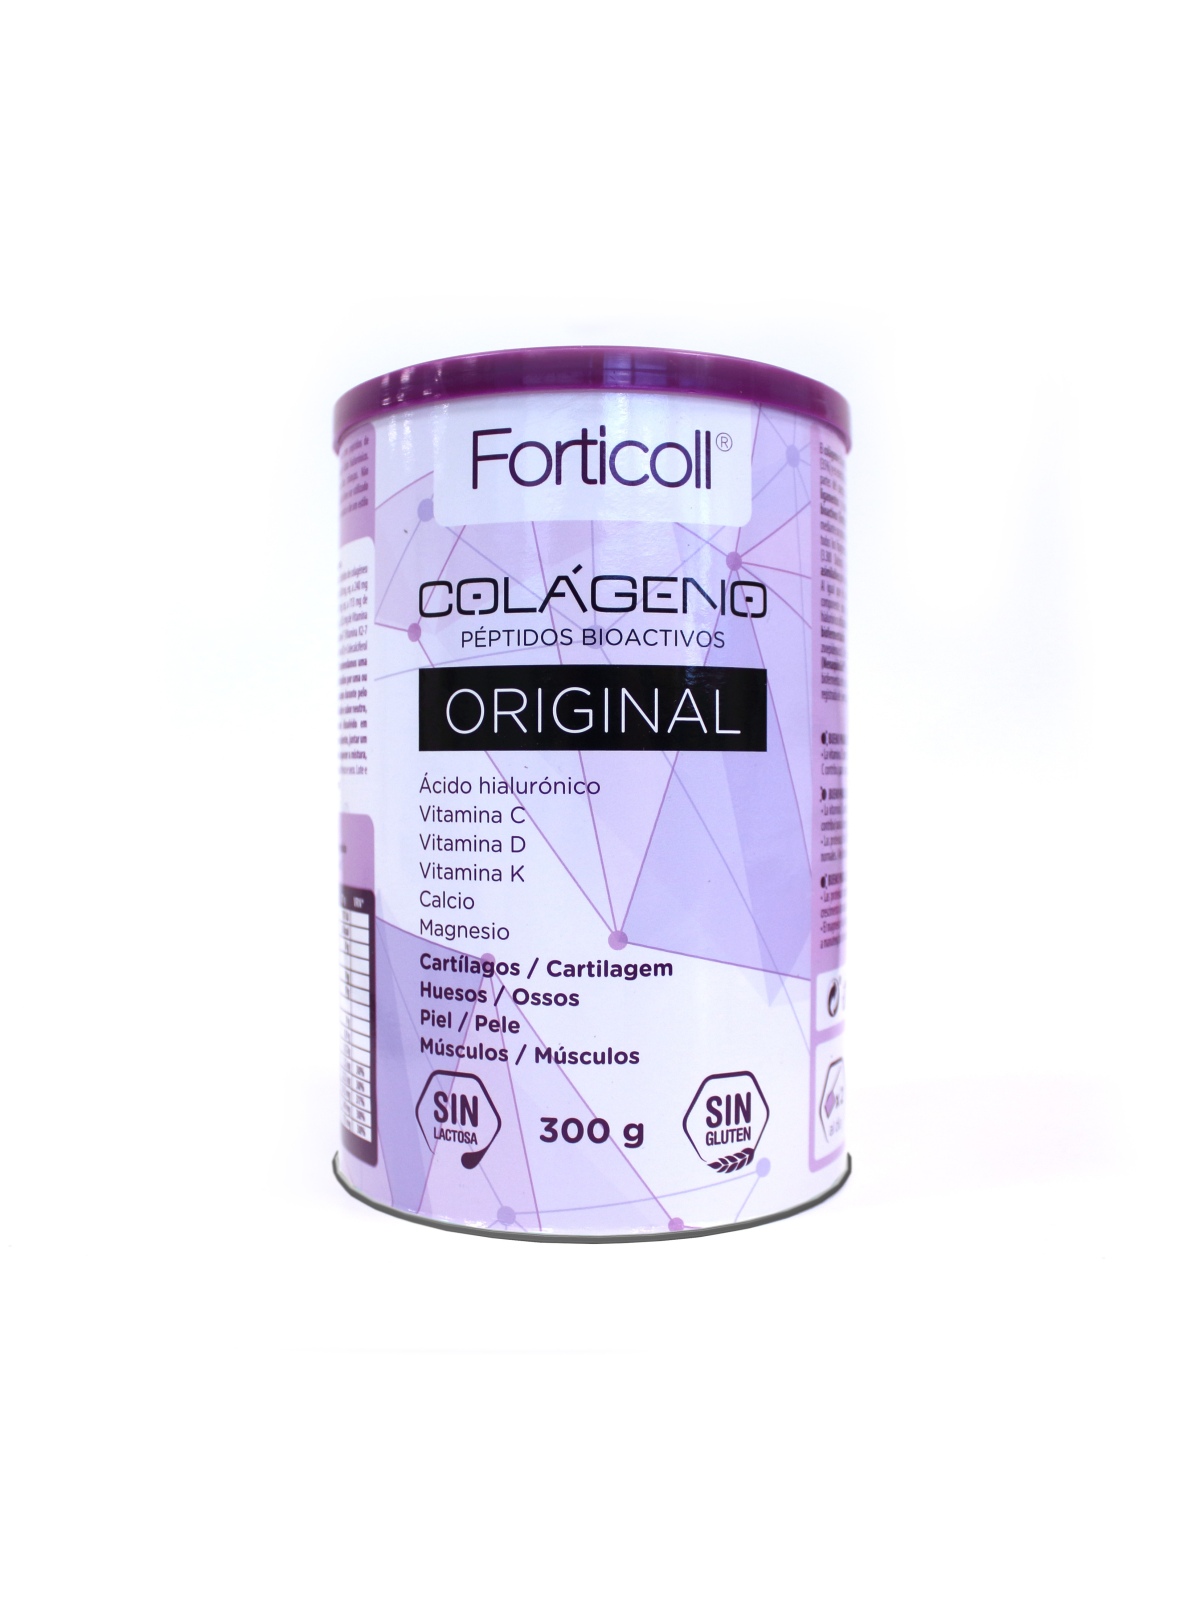 Forticoll colágeno bioactivo Original